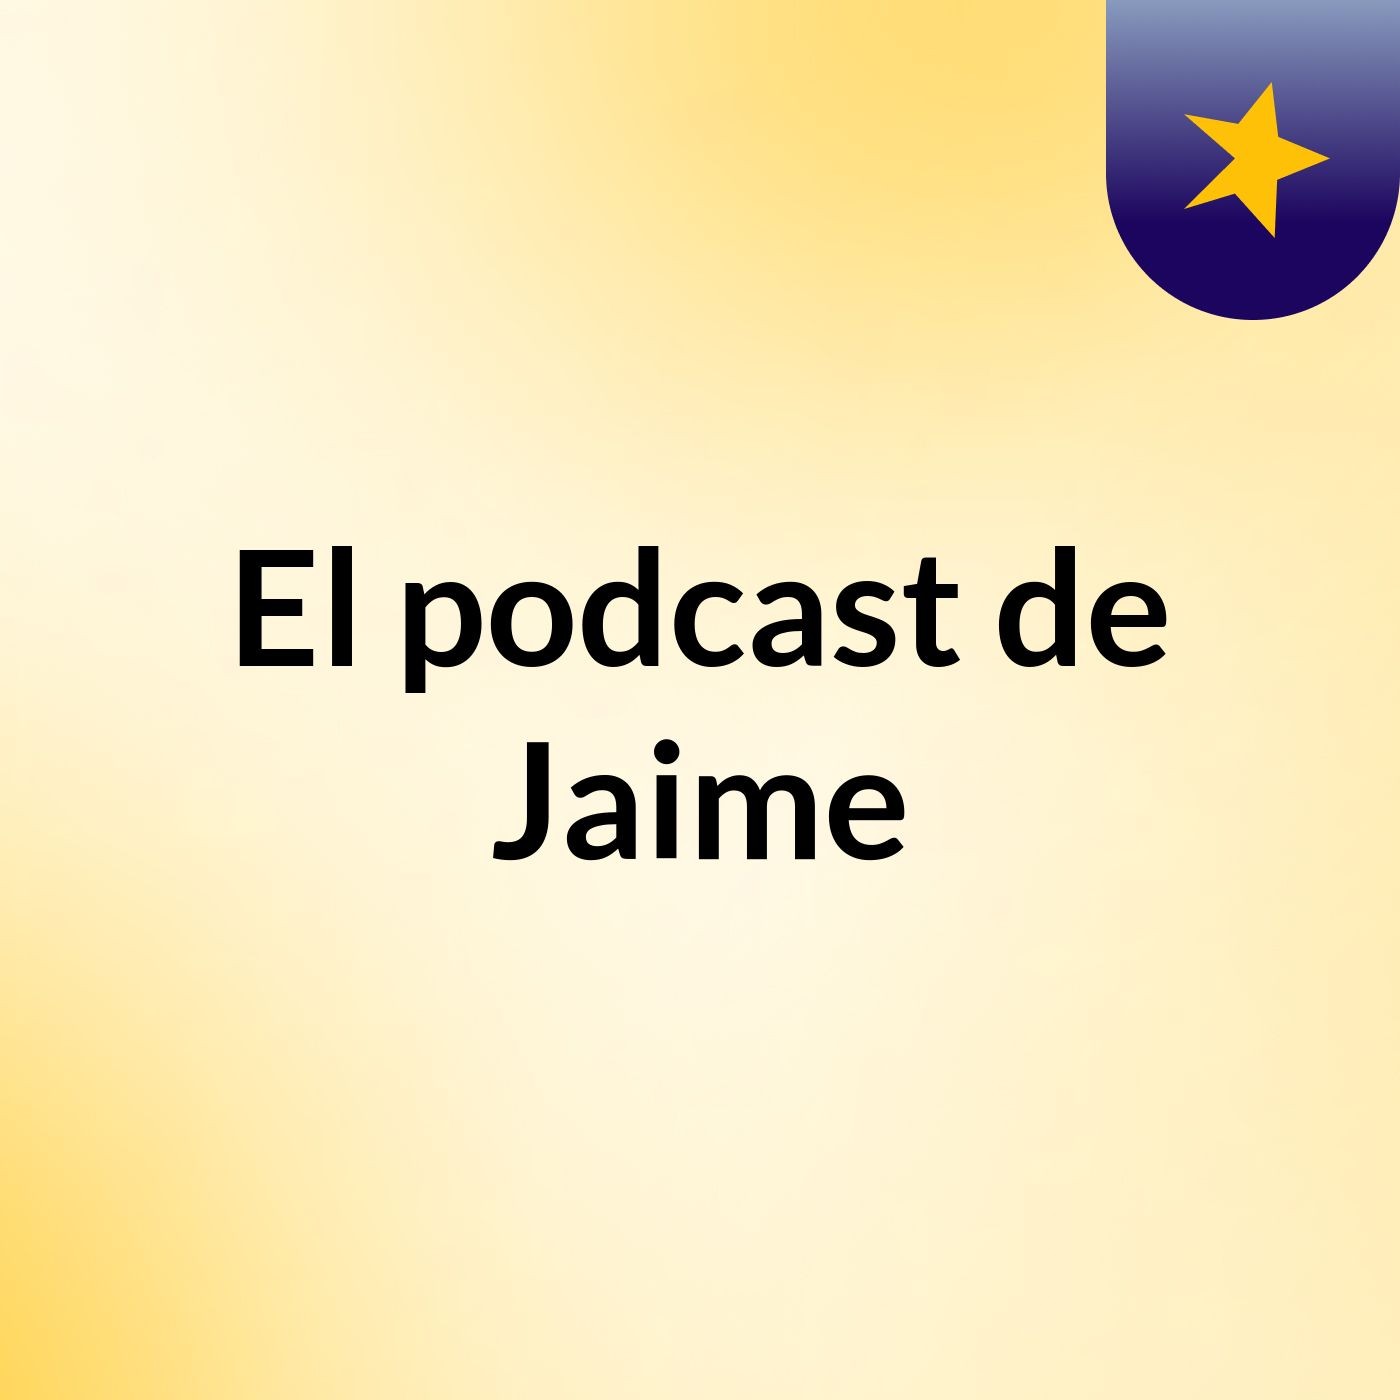 Episodio 2 - podcast Jaime